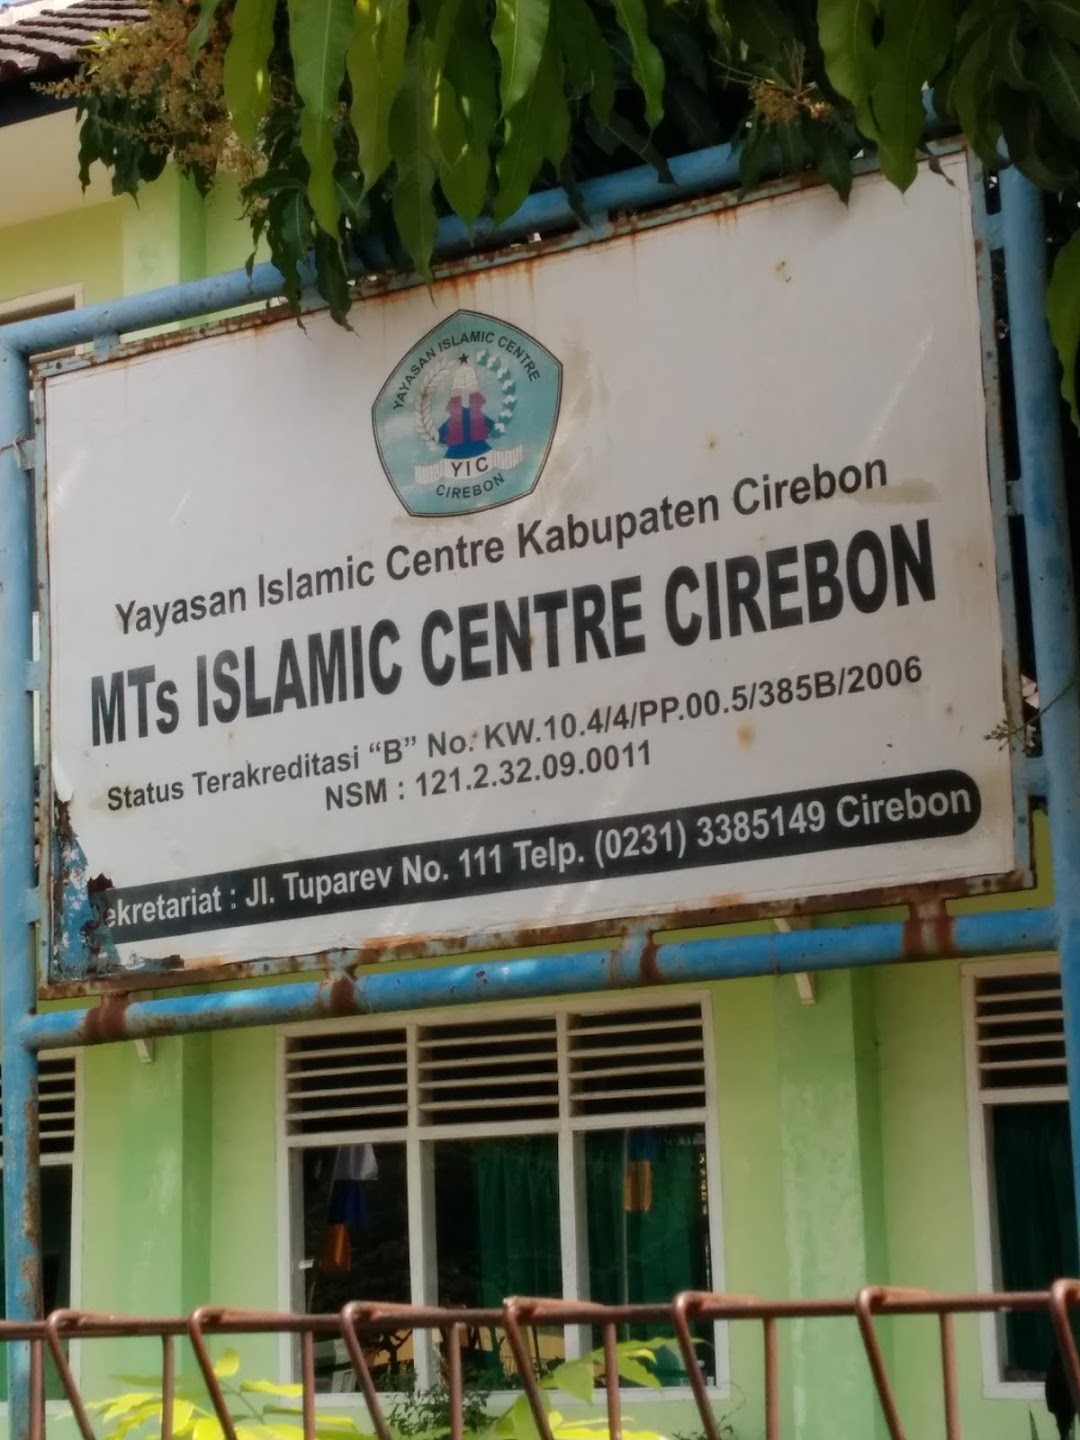 MTS Islamic Centre Cirebon